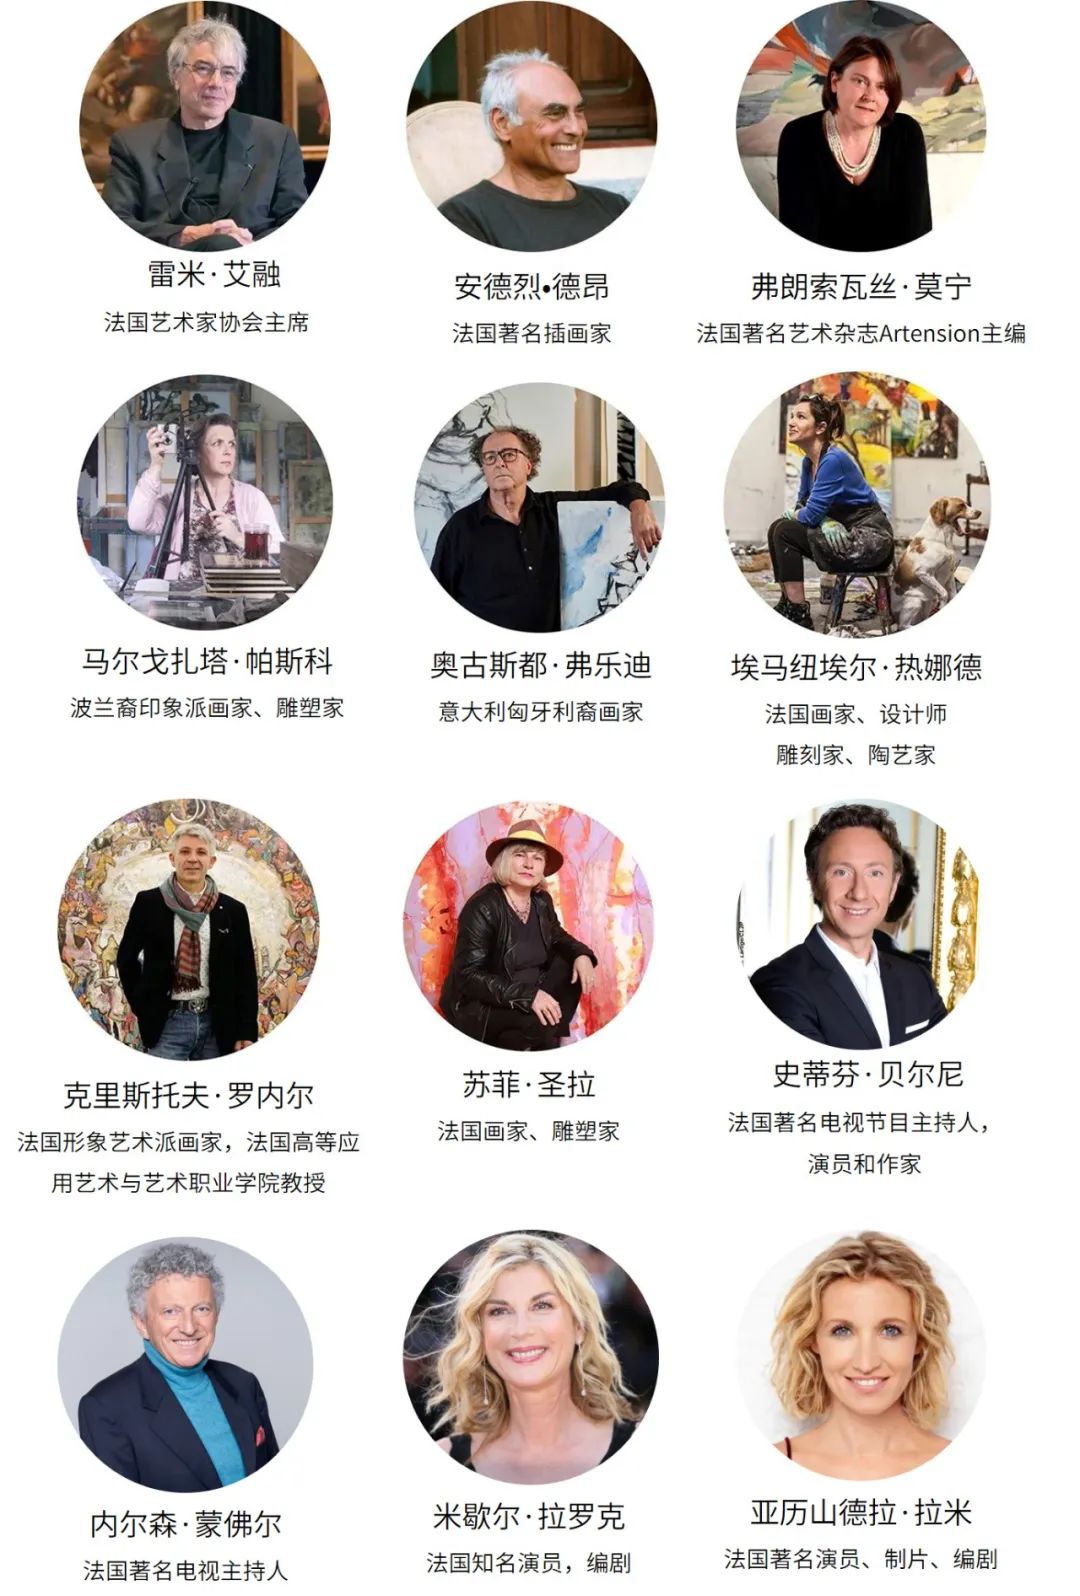 “中国·国际非物质文化遗产艺术品博览”活动将于7月14-16日在法国卢浮宫举办